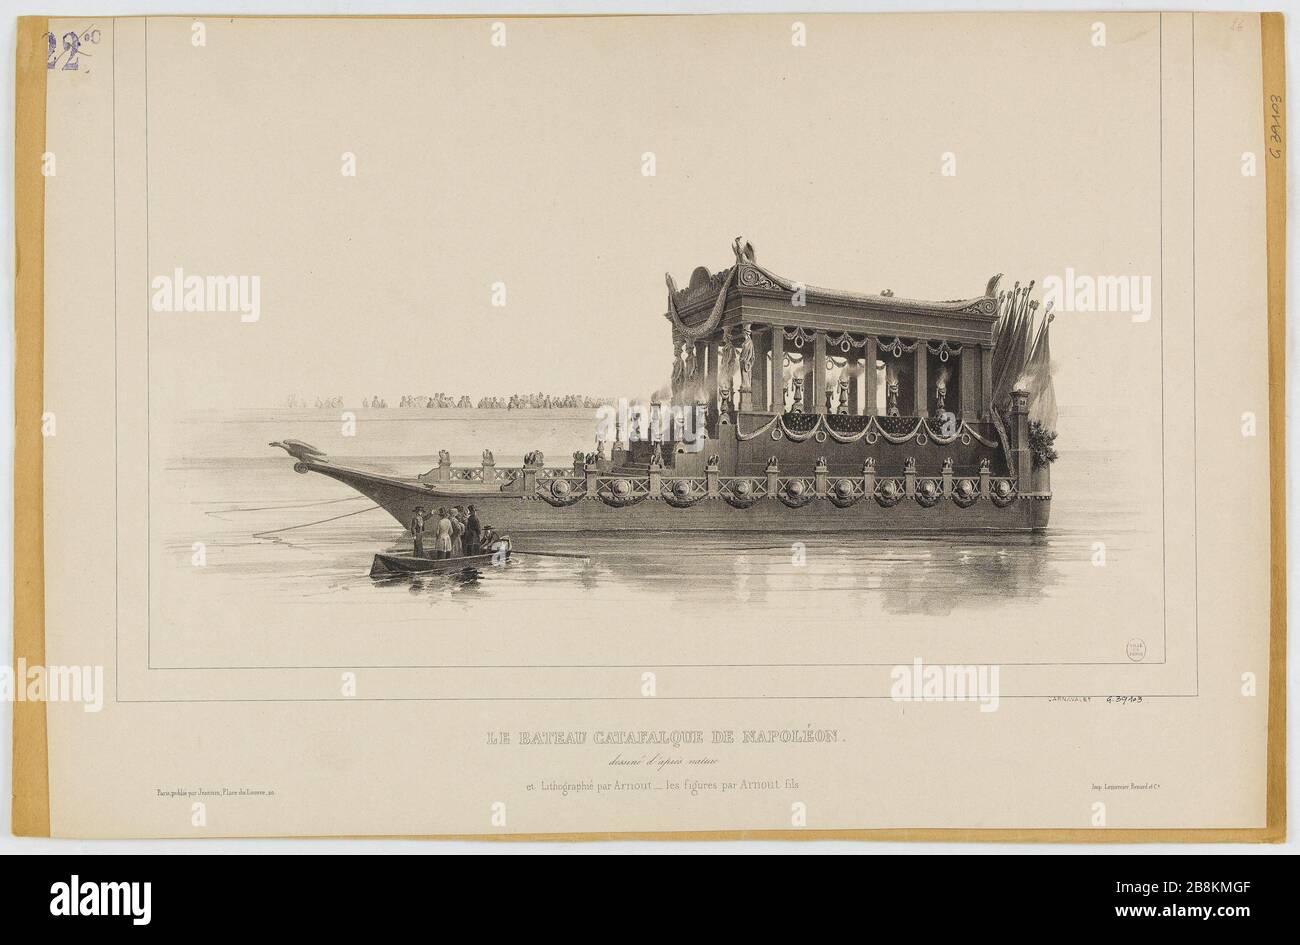 Napoléons Katafalqueboot Jules Arnout (Louis-Jules, 1814-1868). "Le bateau catafalque de Napoléon". Lithographie. Paris, musée Carnavalet. Stockfoto